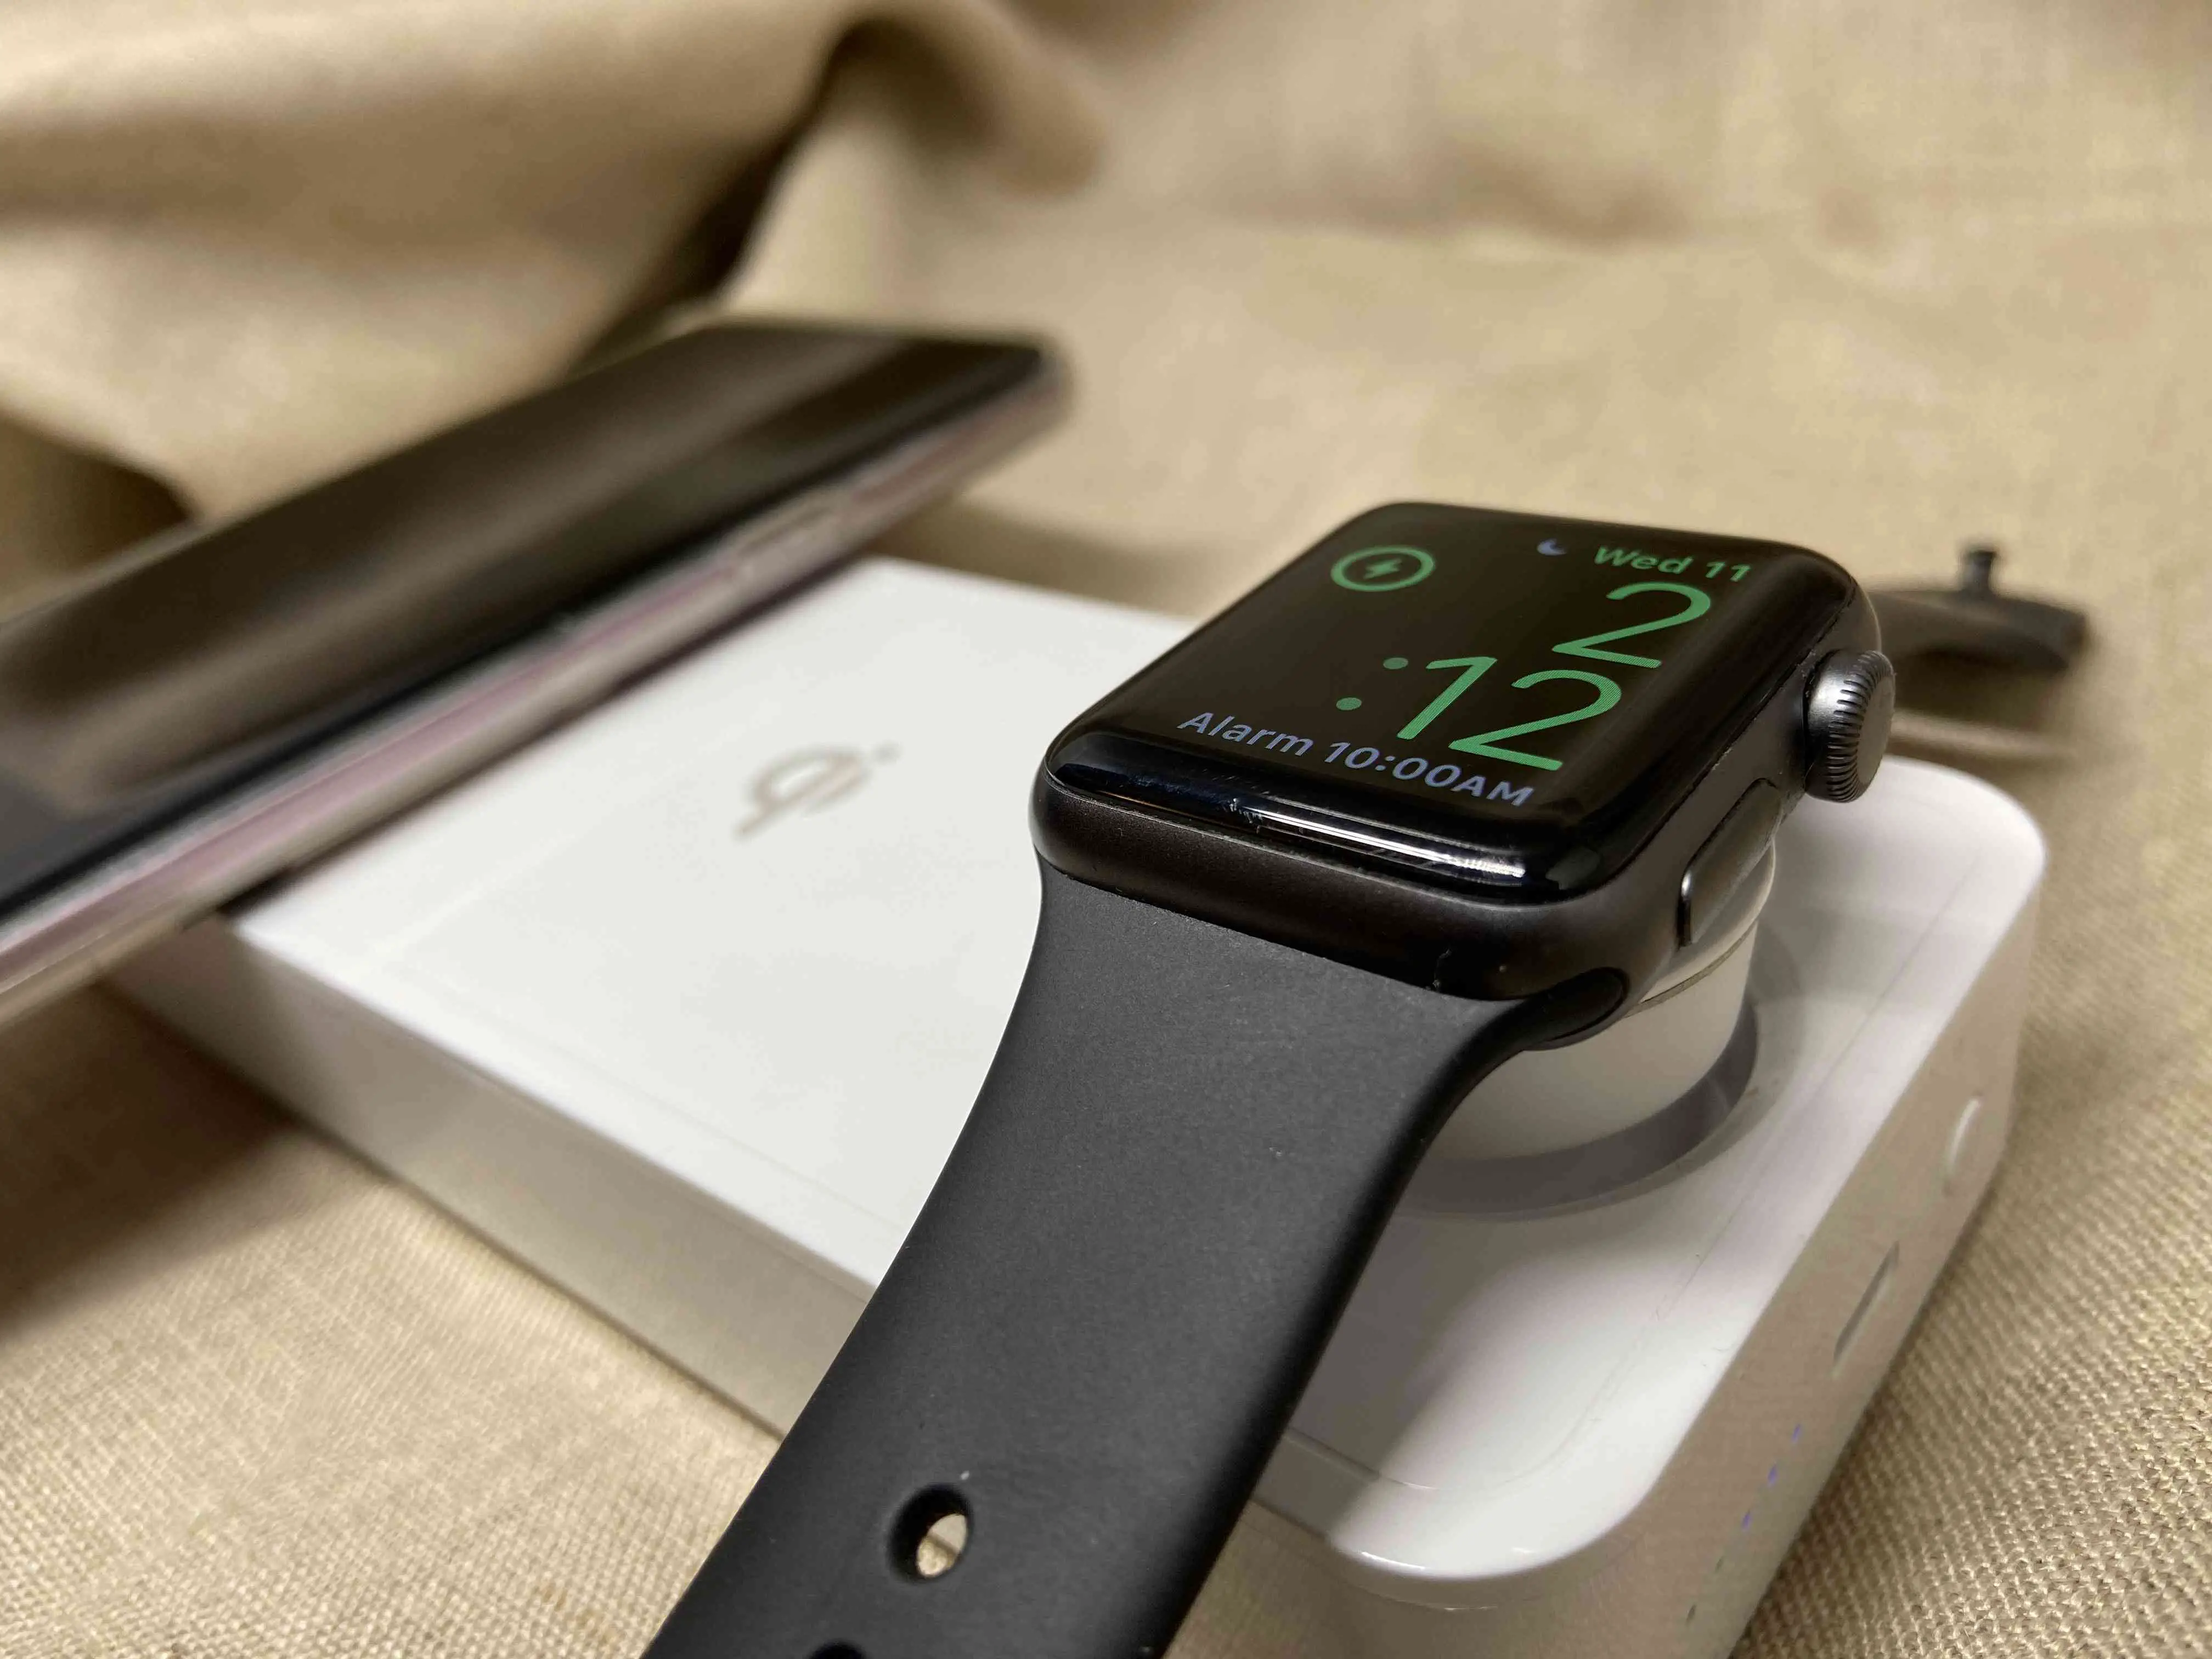 A Eggtronic Power Bar carregando um Apple Watch e um smartphone